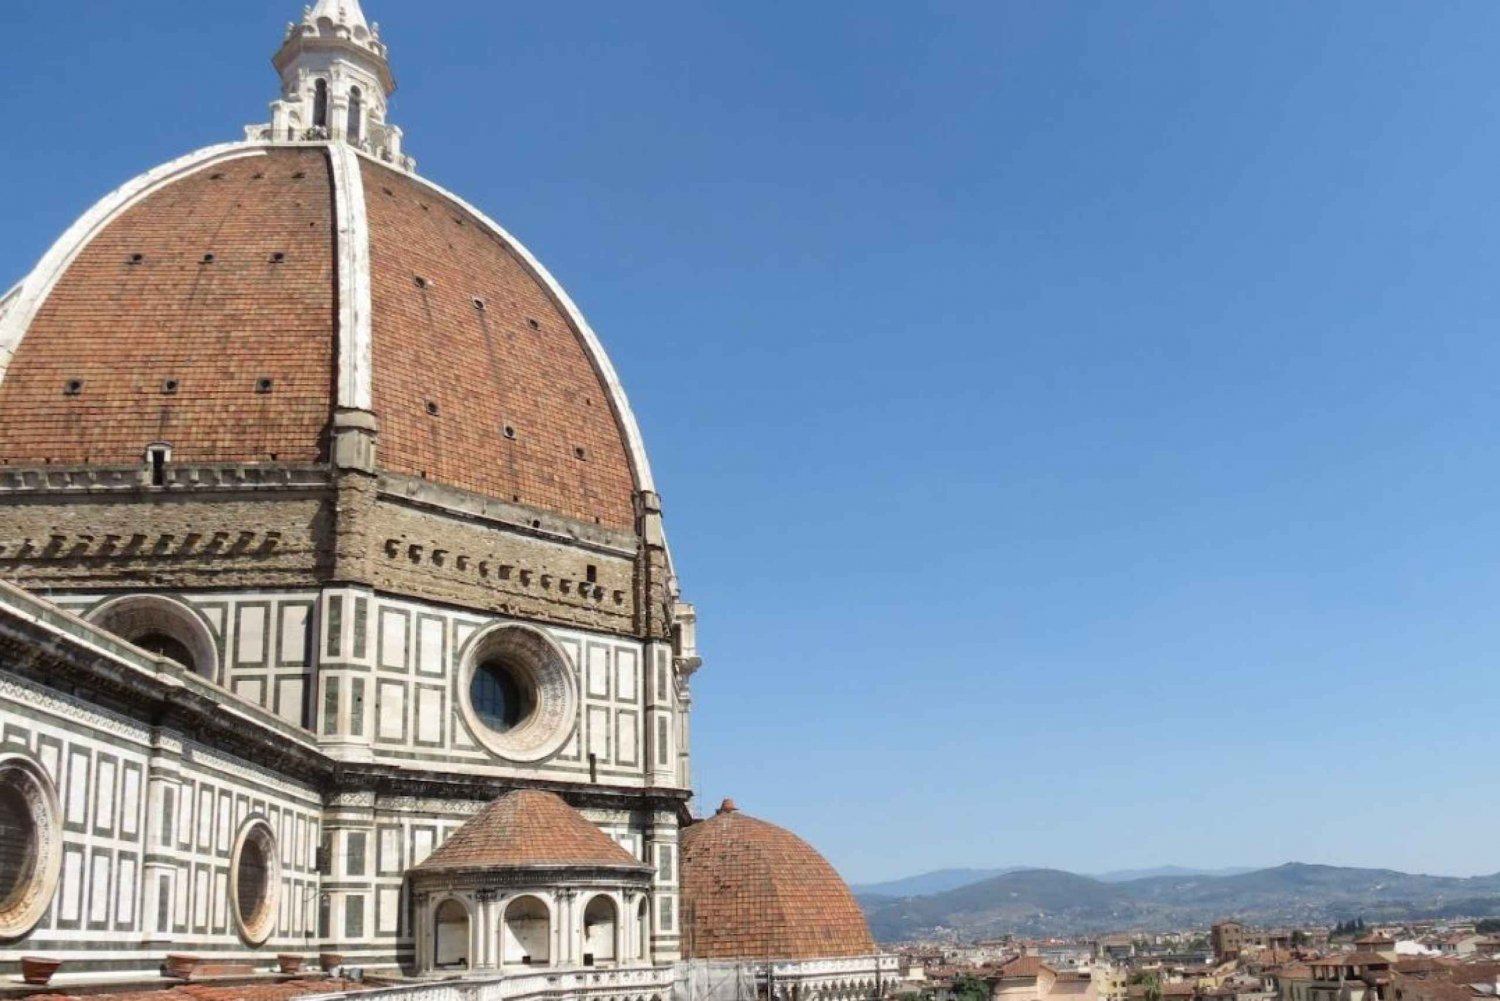 Eintrittskarten für die Kuppel von Brunelleschi in Florenz